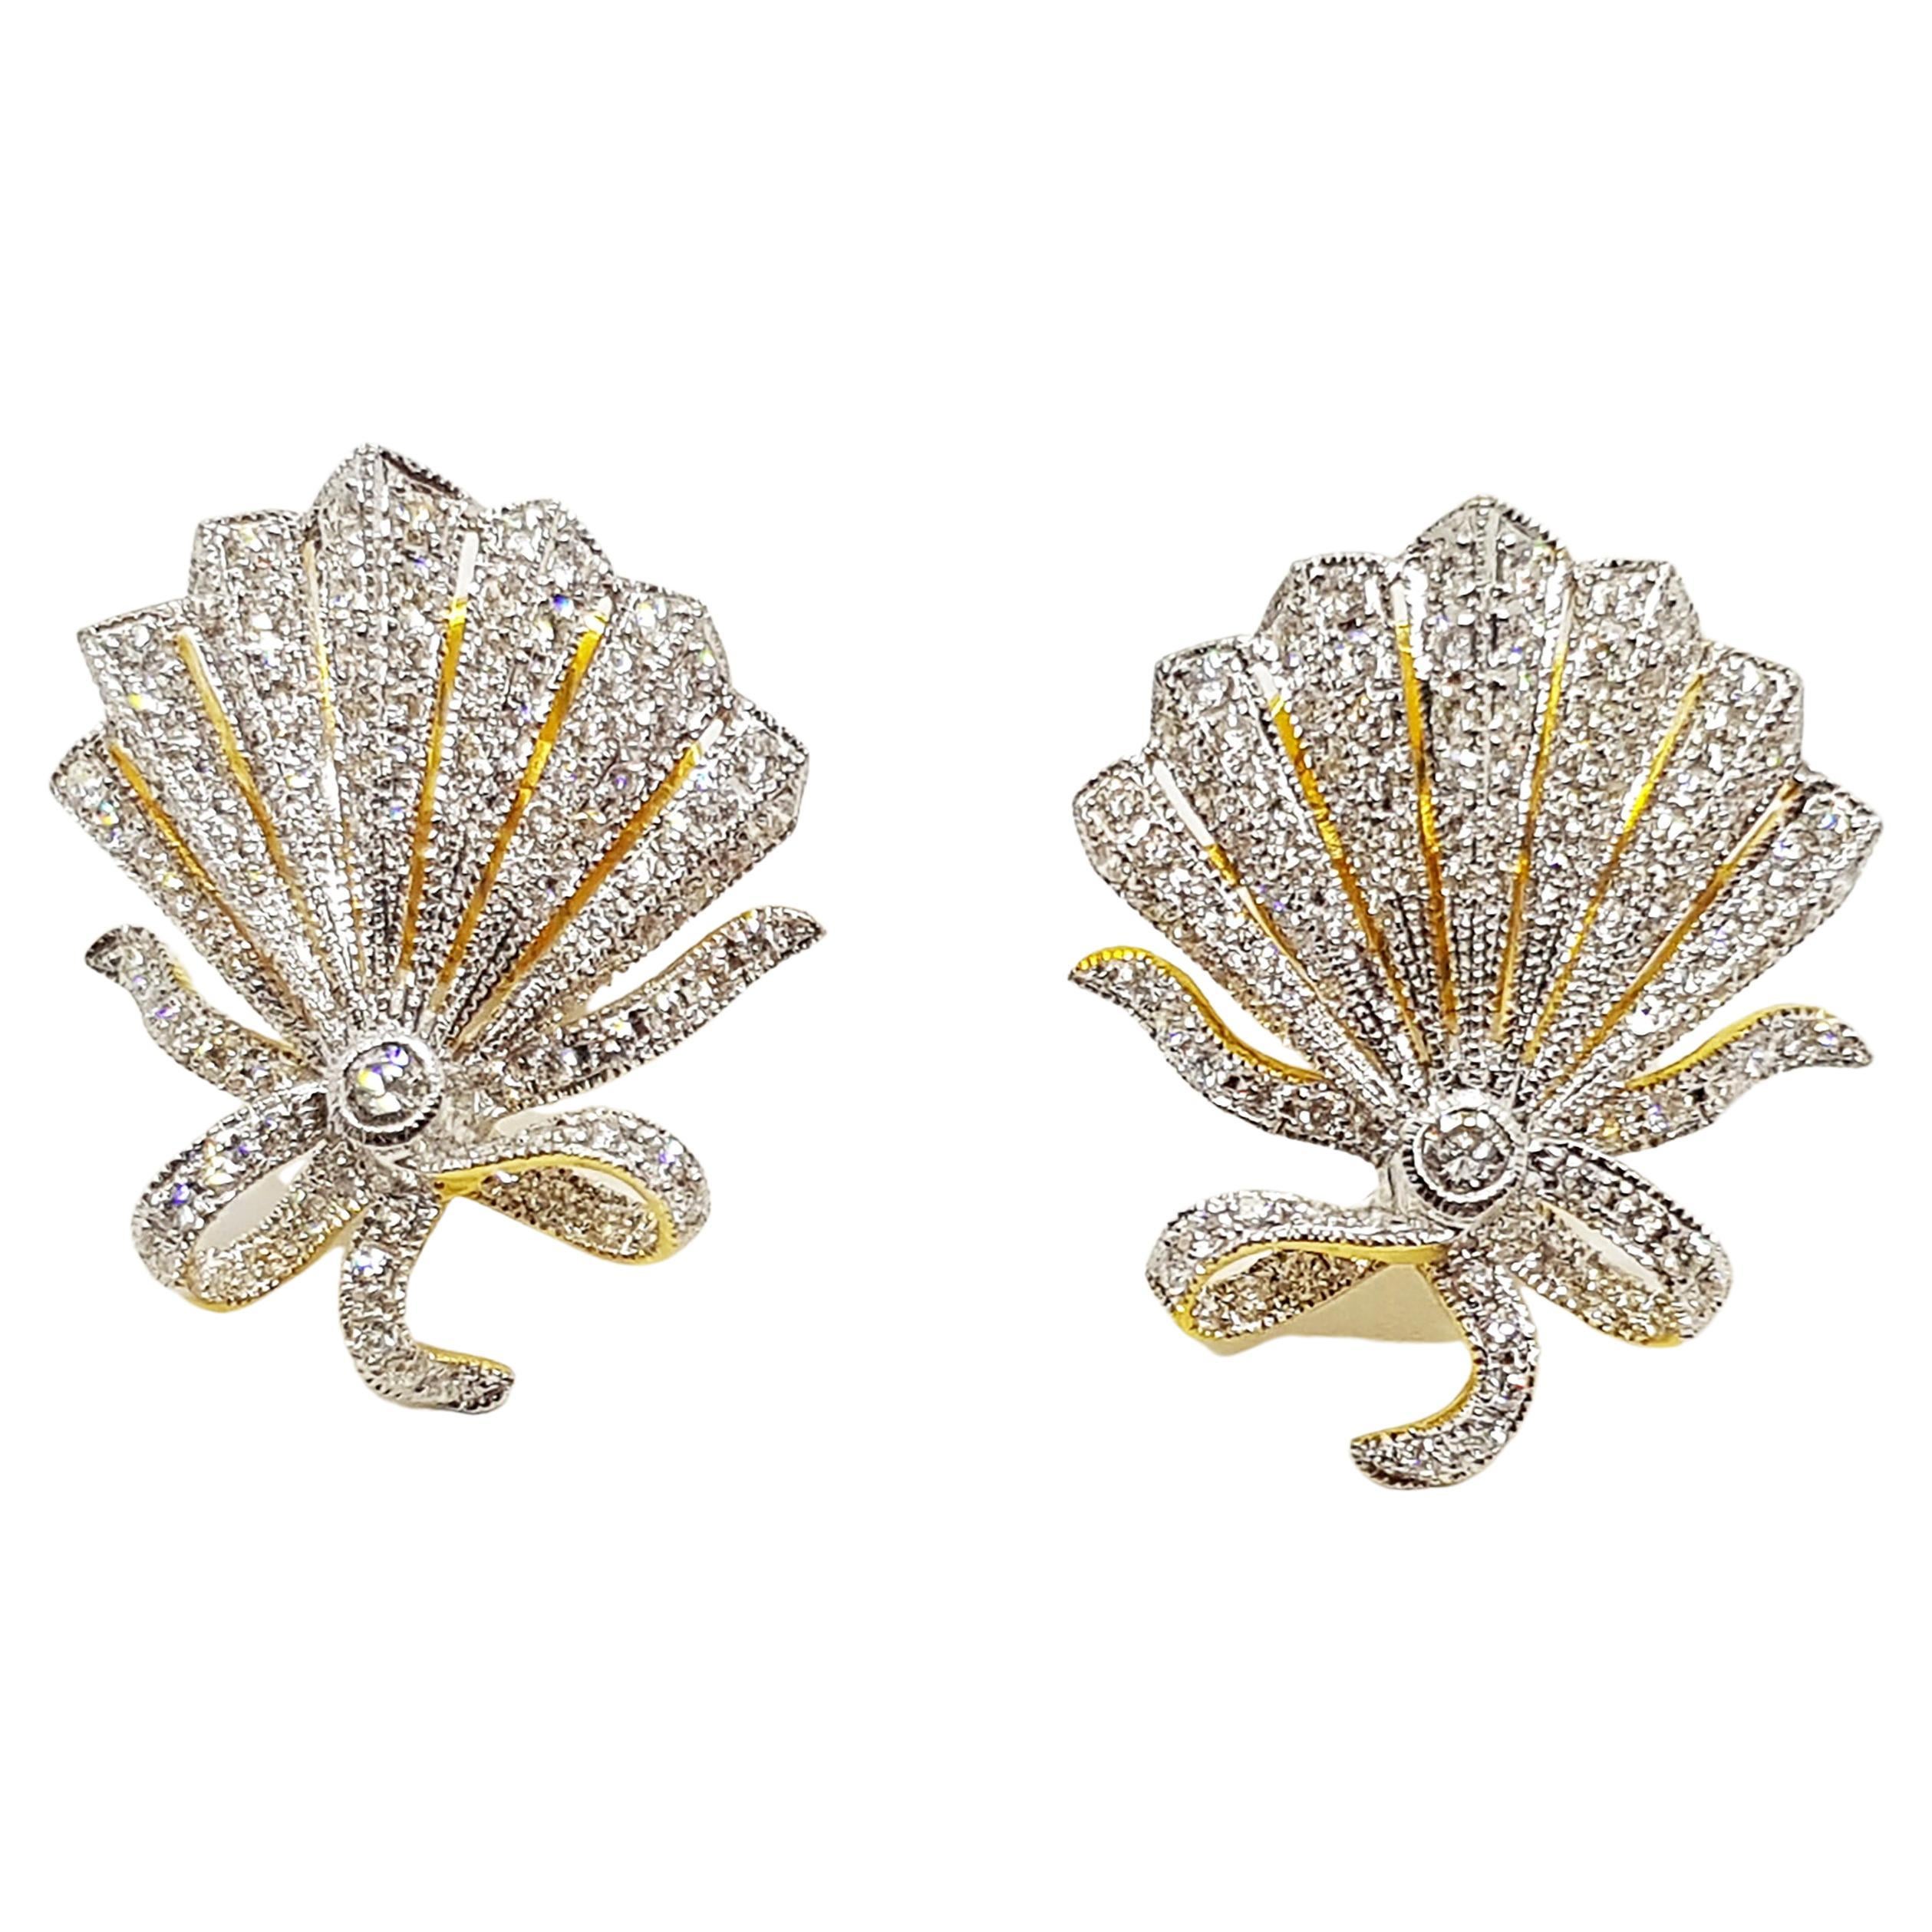 Diamond Earrings Set in 18 Karat Gold Settings